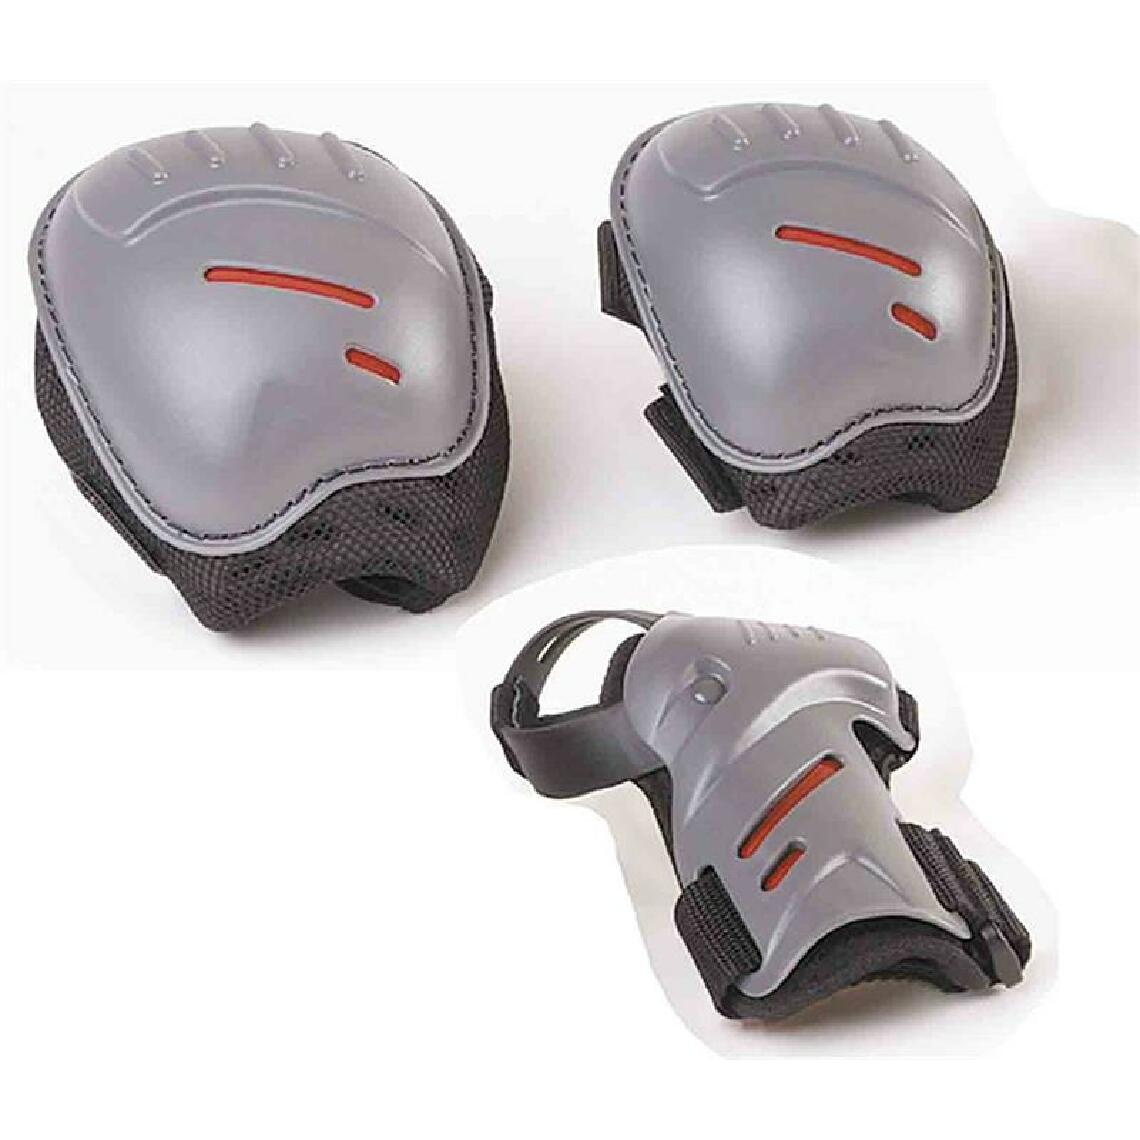 Hudora - Hudora 83161 - Set de protection pour inliners ou rollerskaters - Taille S - Jeux de récréation